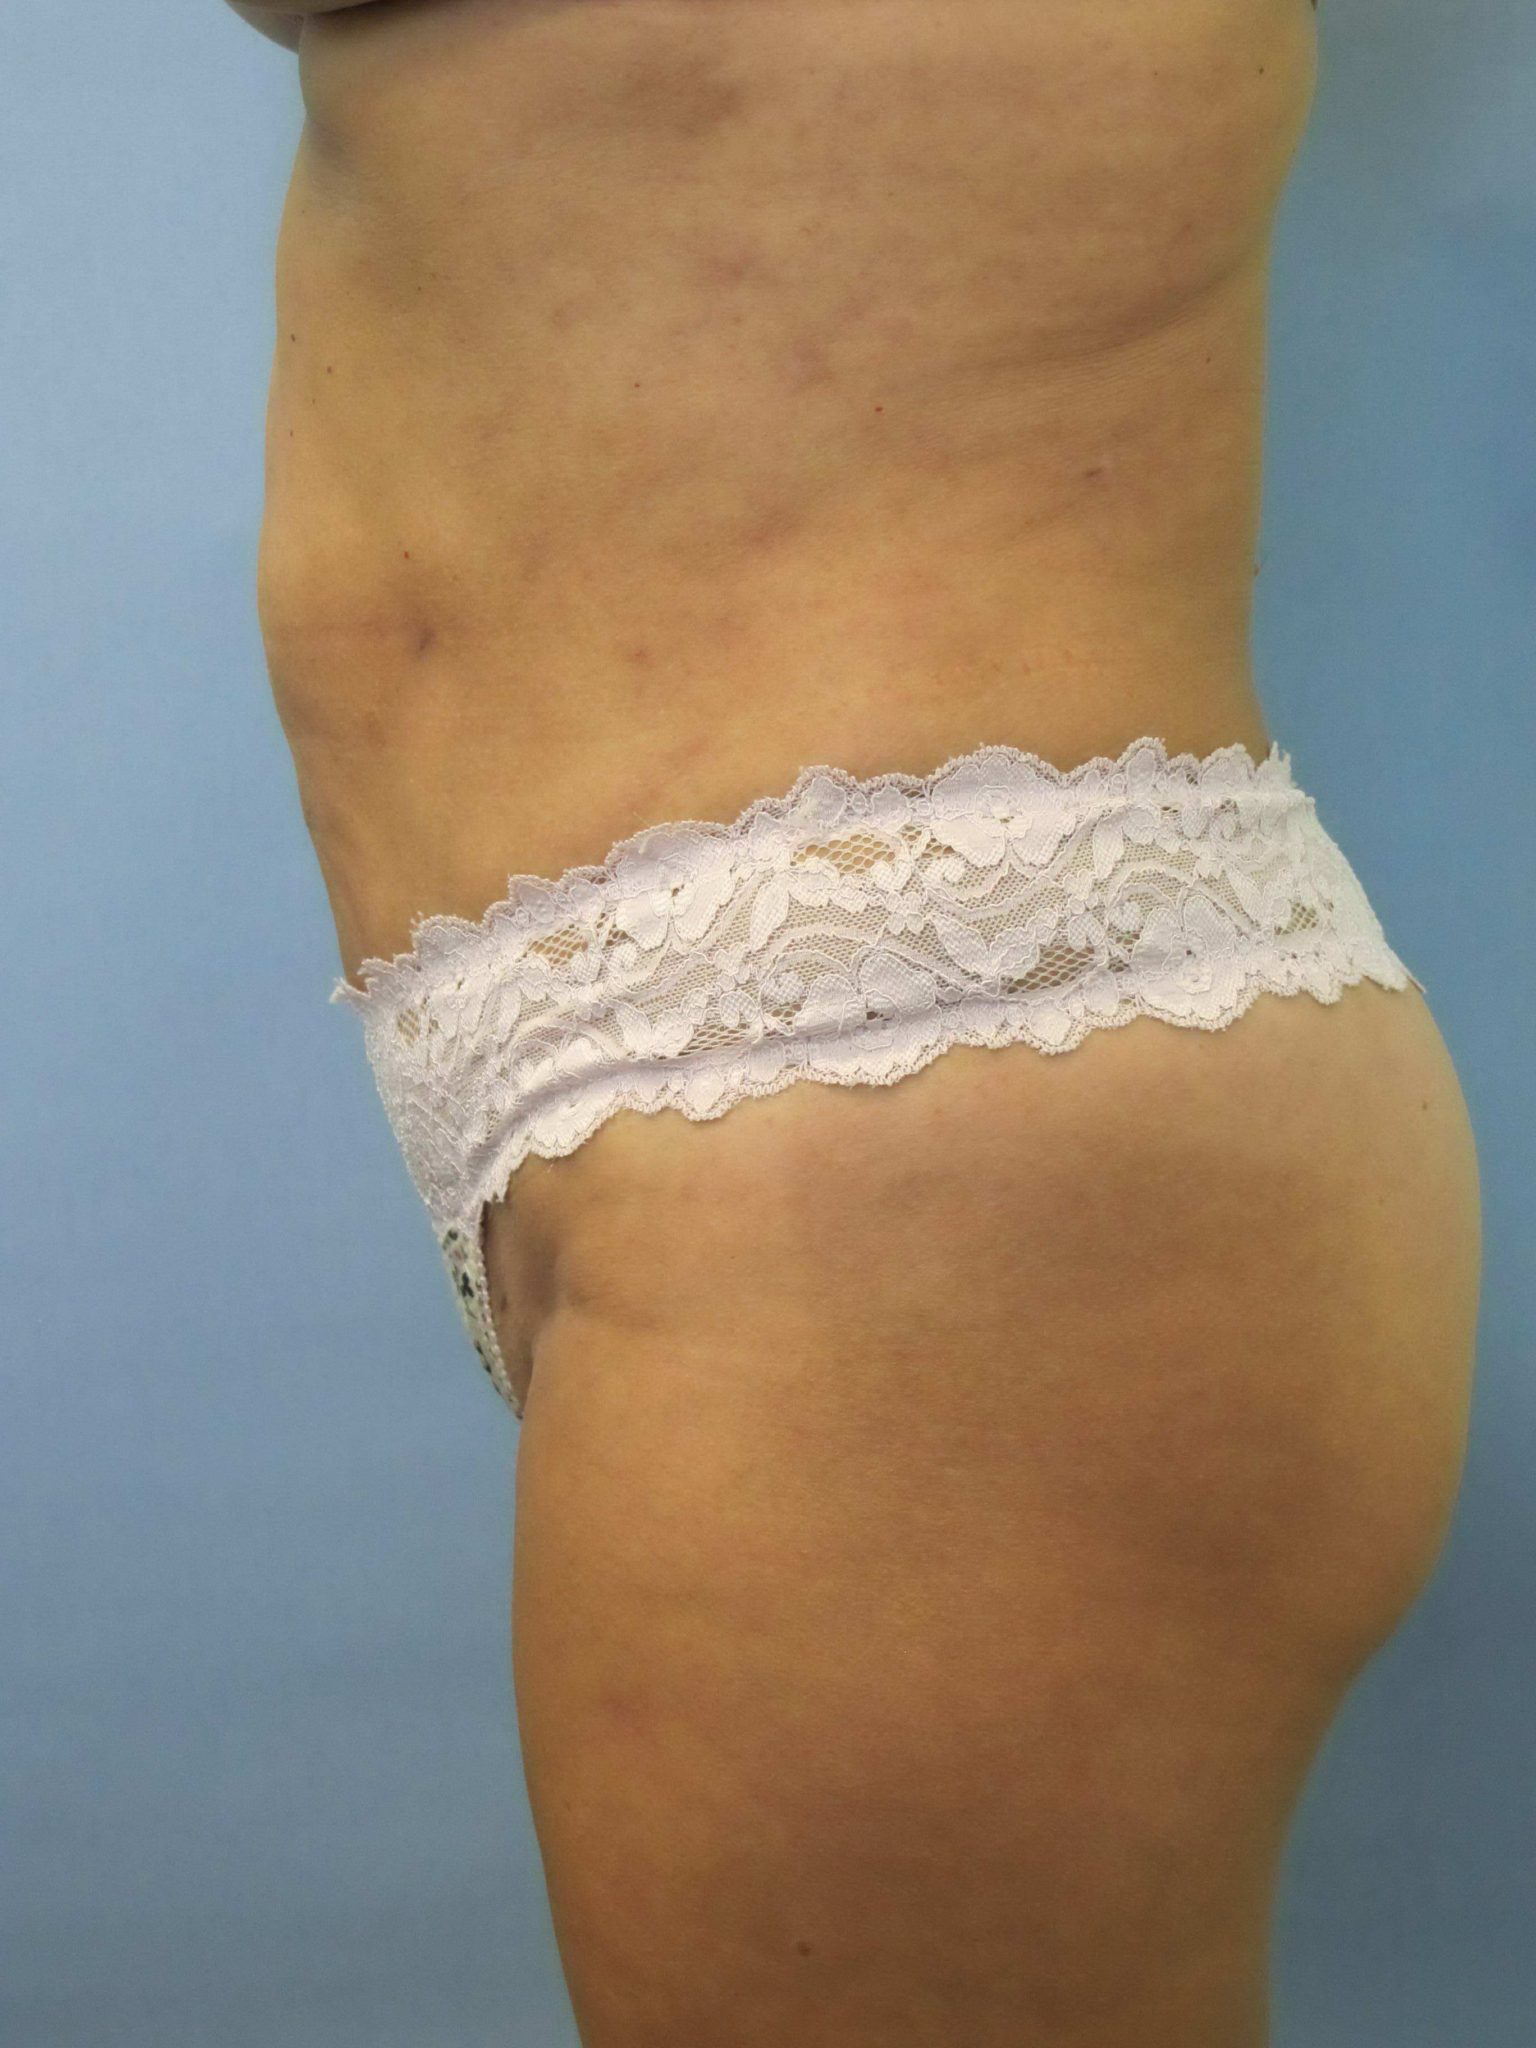 Liposuction Patient Photo - Case 80 - after view